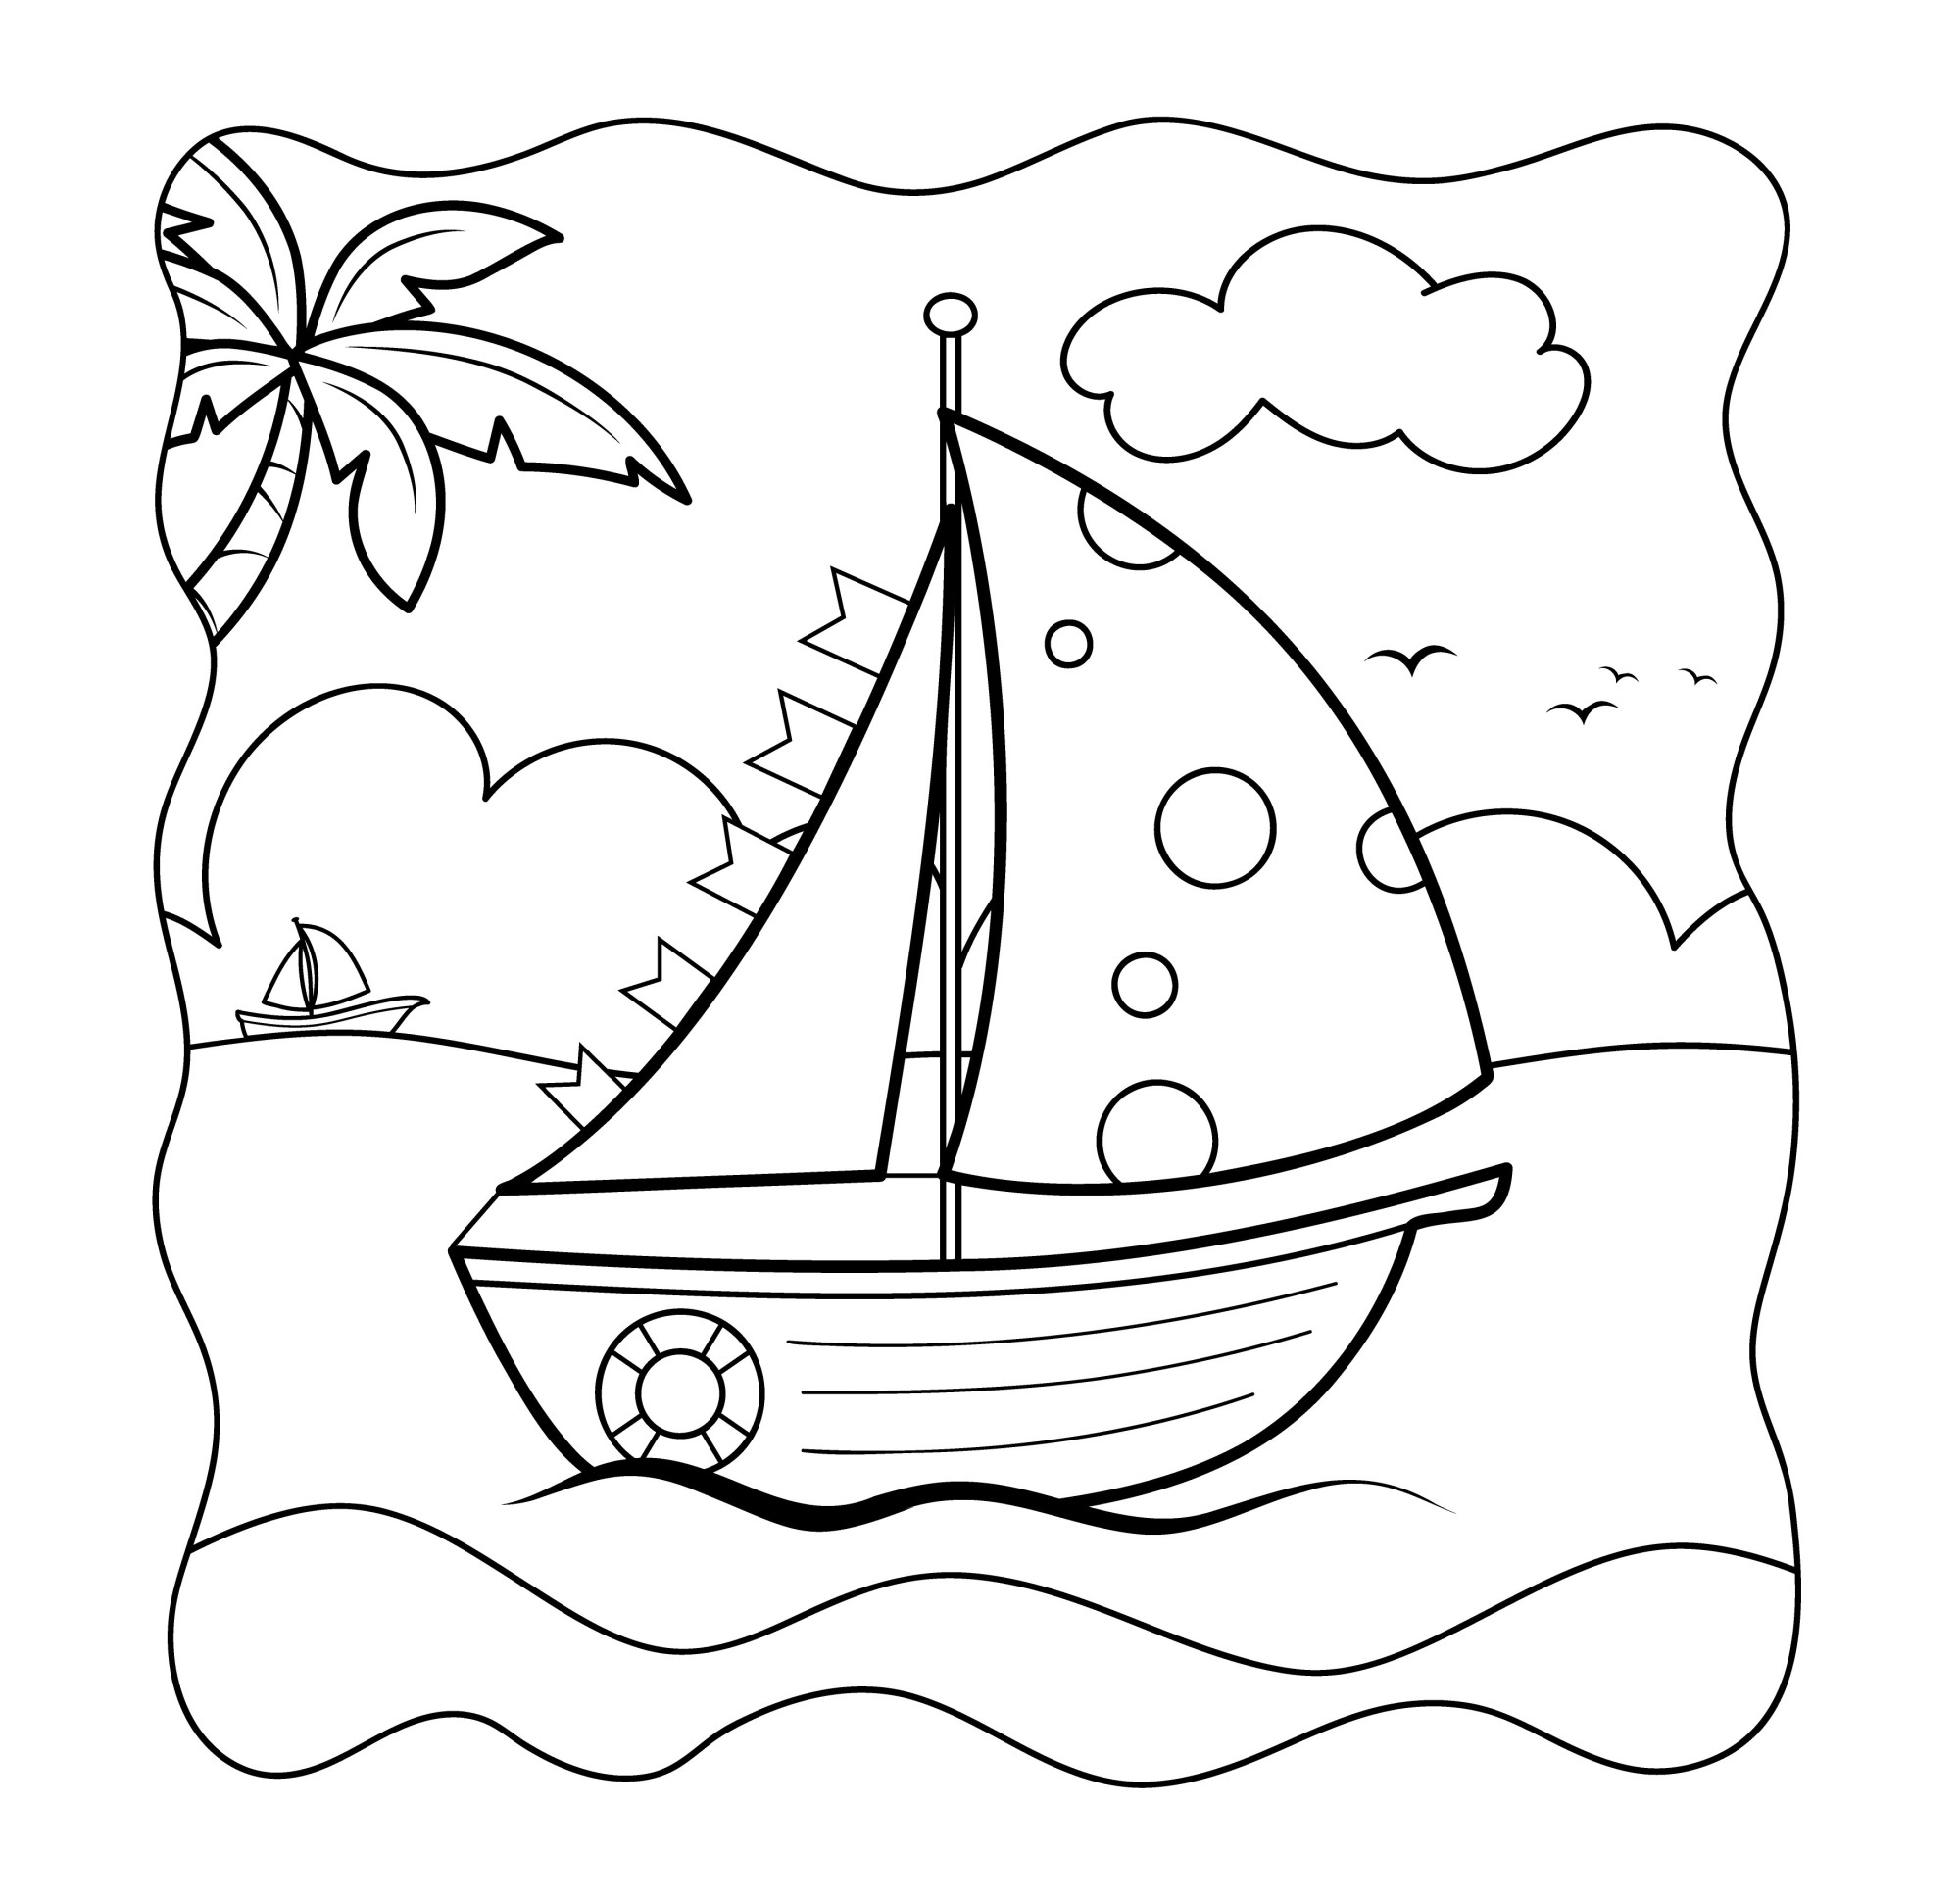 Раскраска для детей: кораблик в море